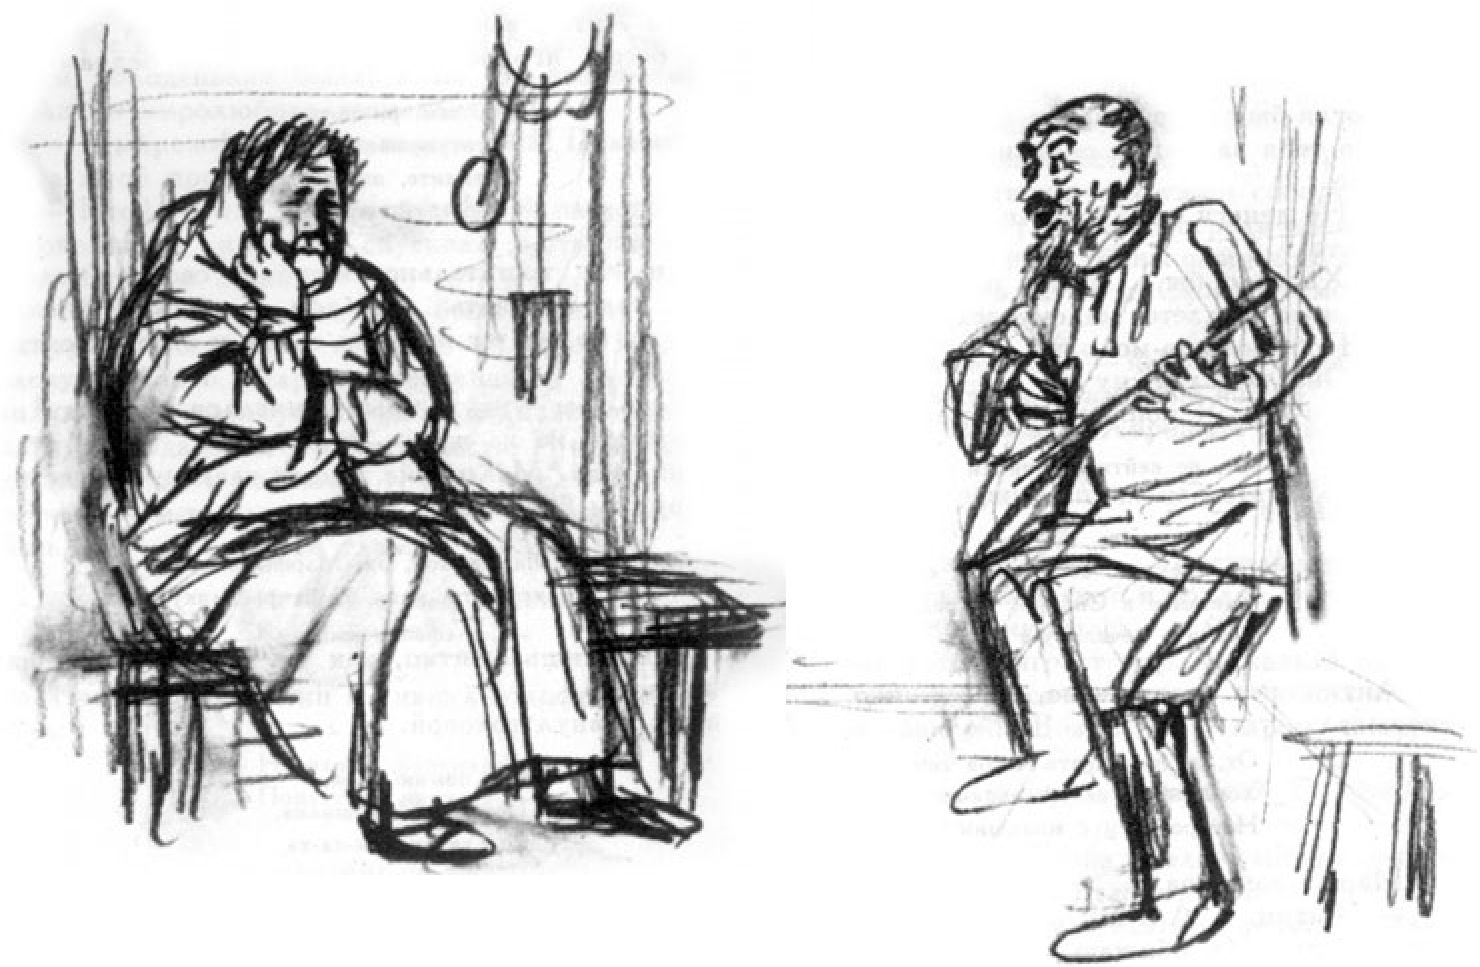 Иллюстрации к рассказам В.М. Шукшина Г.В. Калиновского (1929—2006). 1979 г. «Одни»